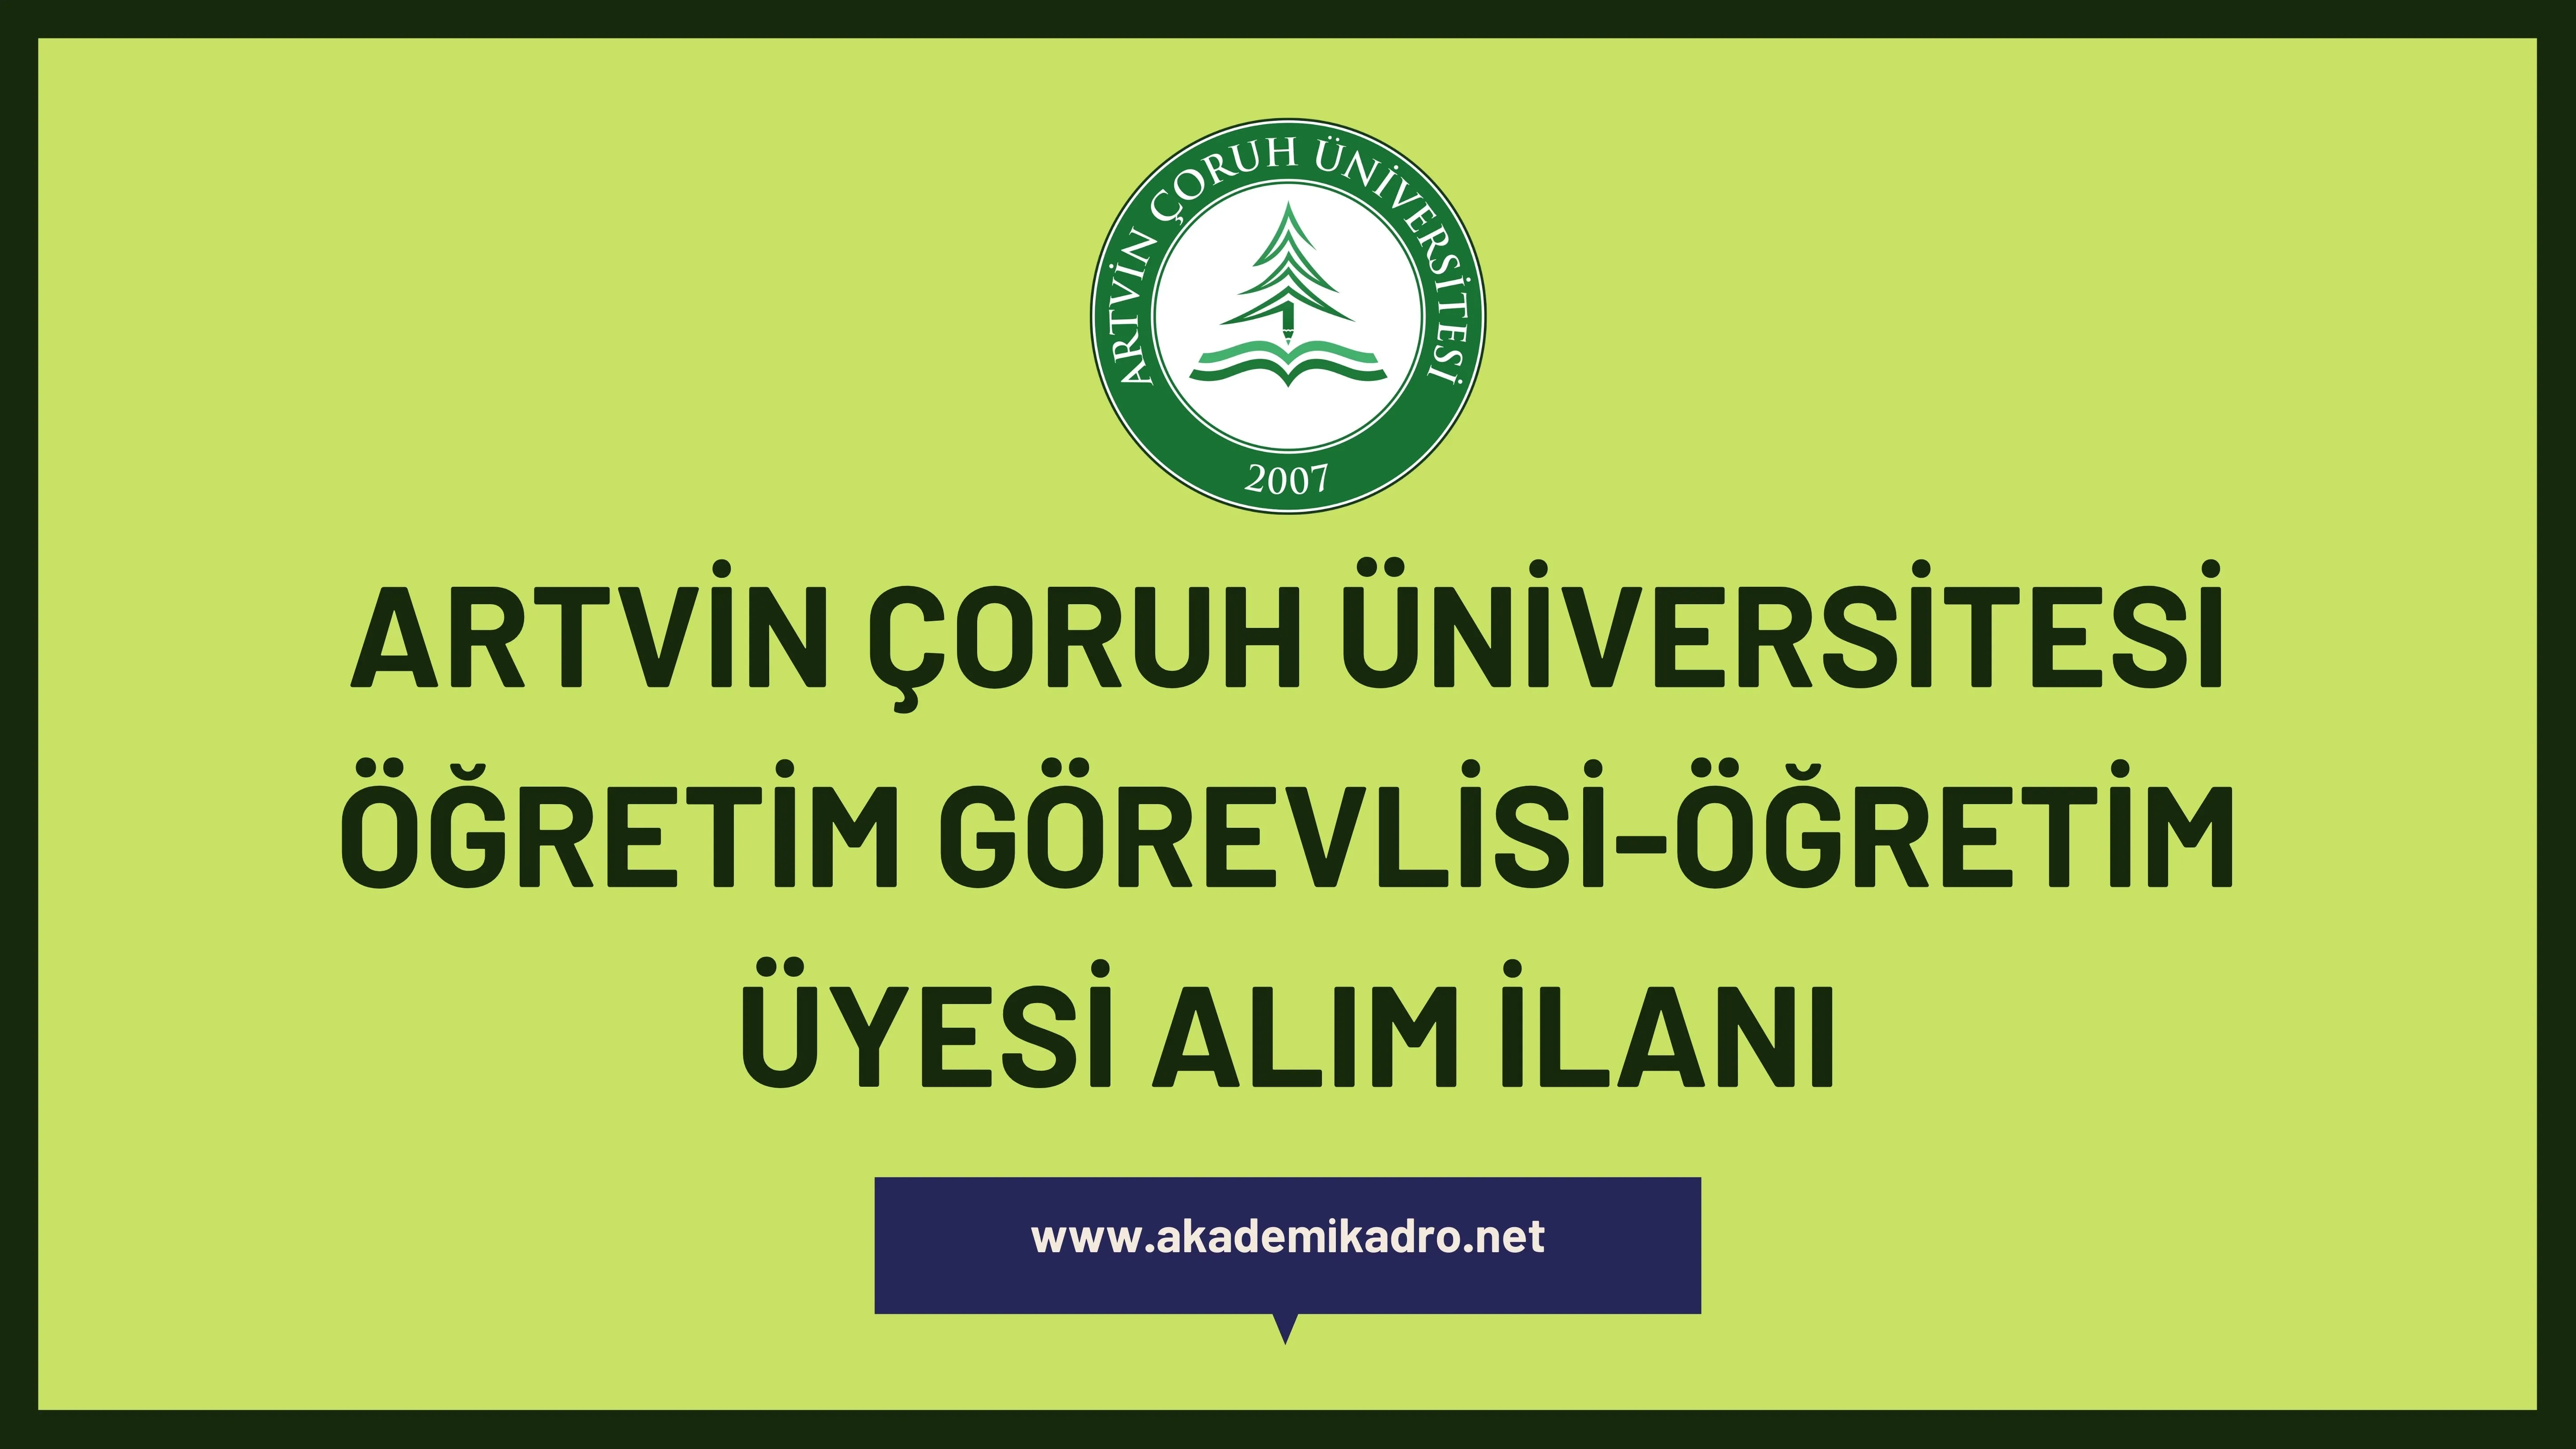 Artvin Çoruh Üniversitesi 7 Öğretim görevlisi ve 3 Öğretim üyesi alacak.